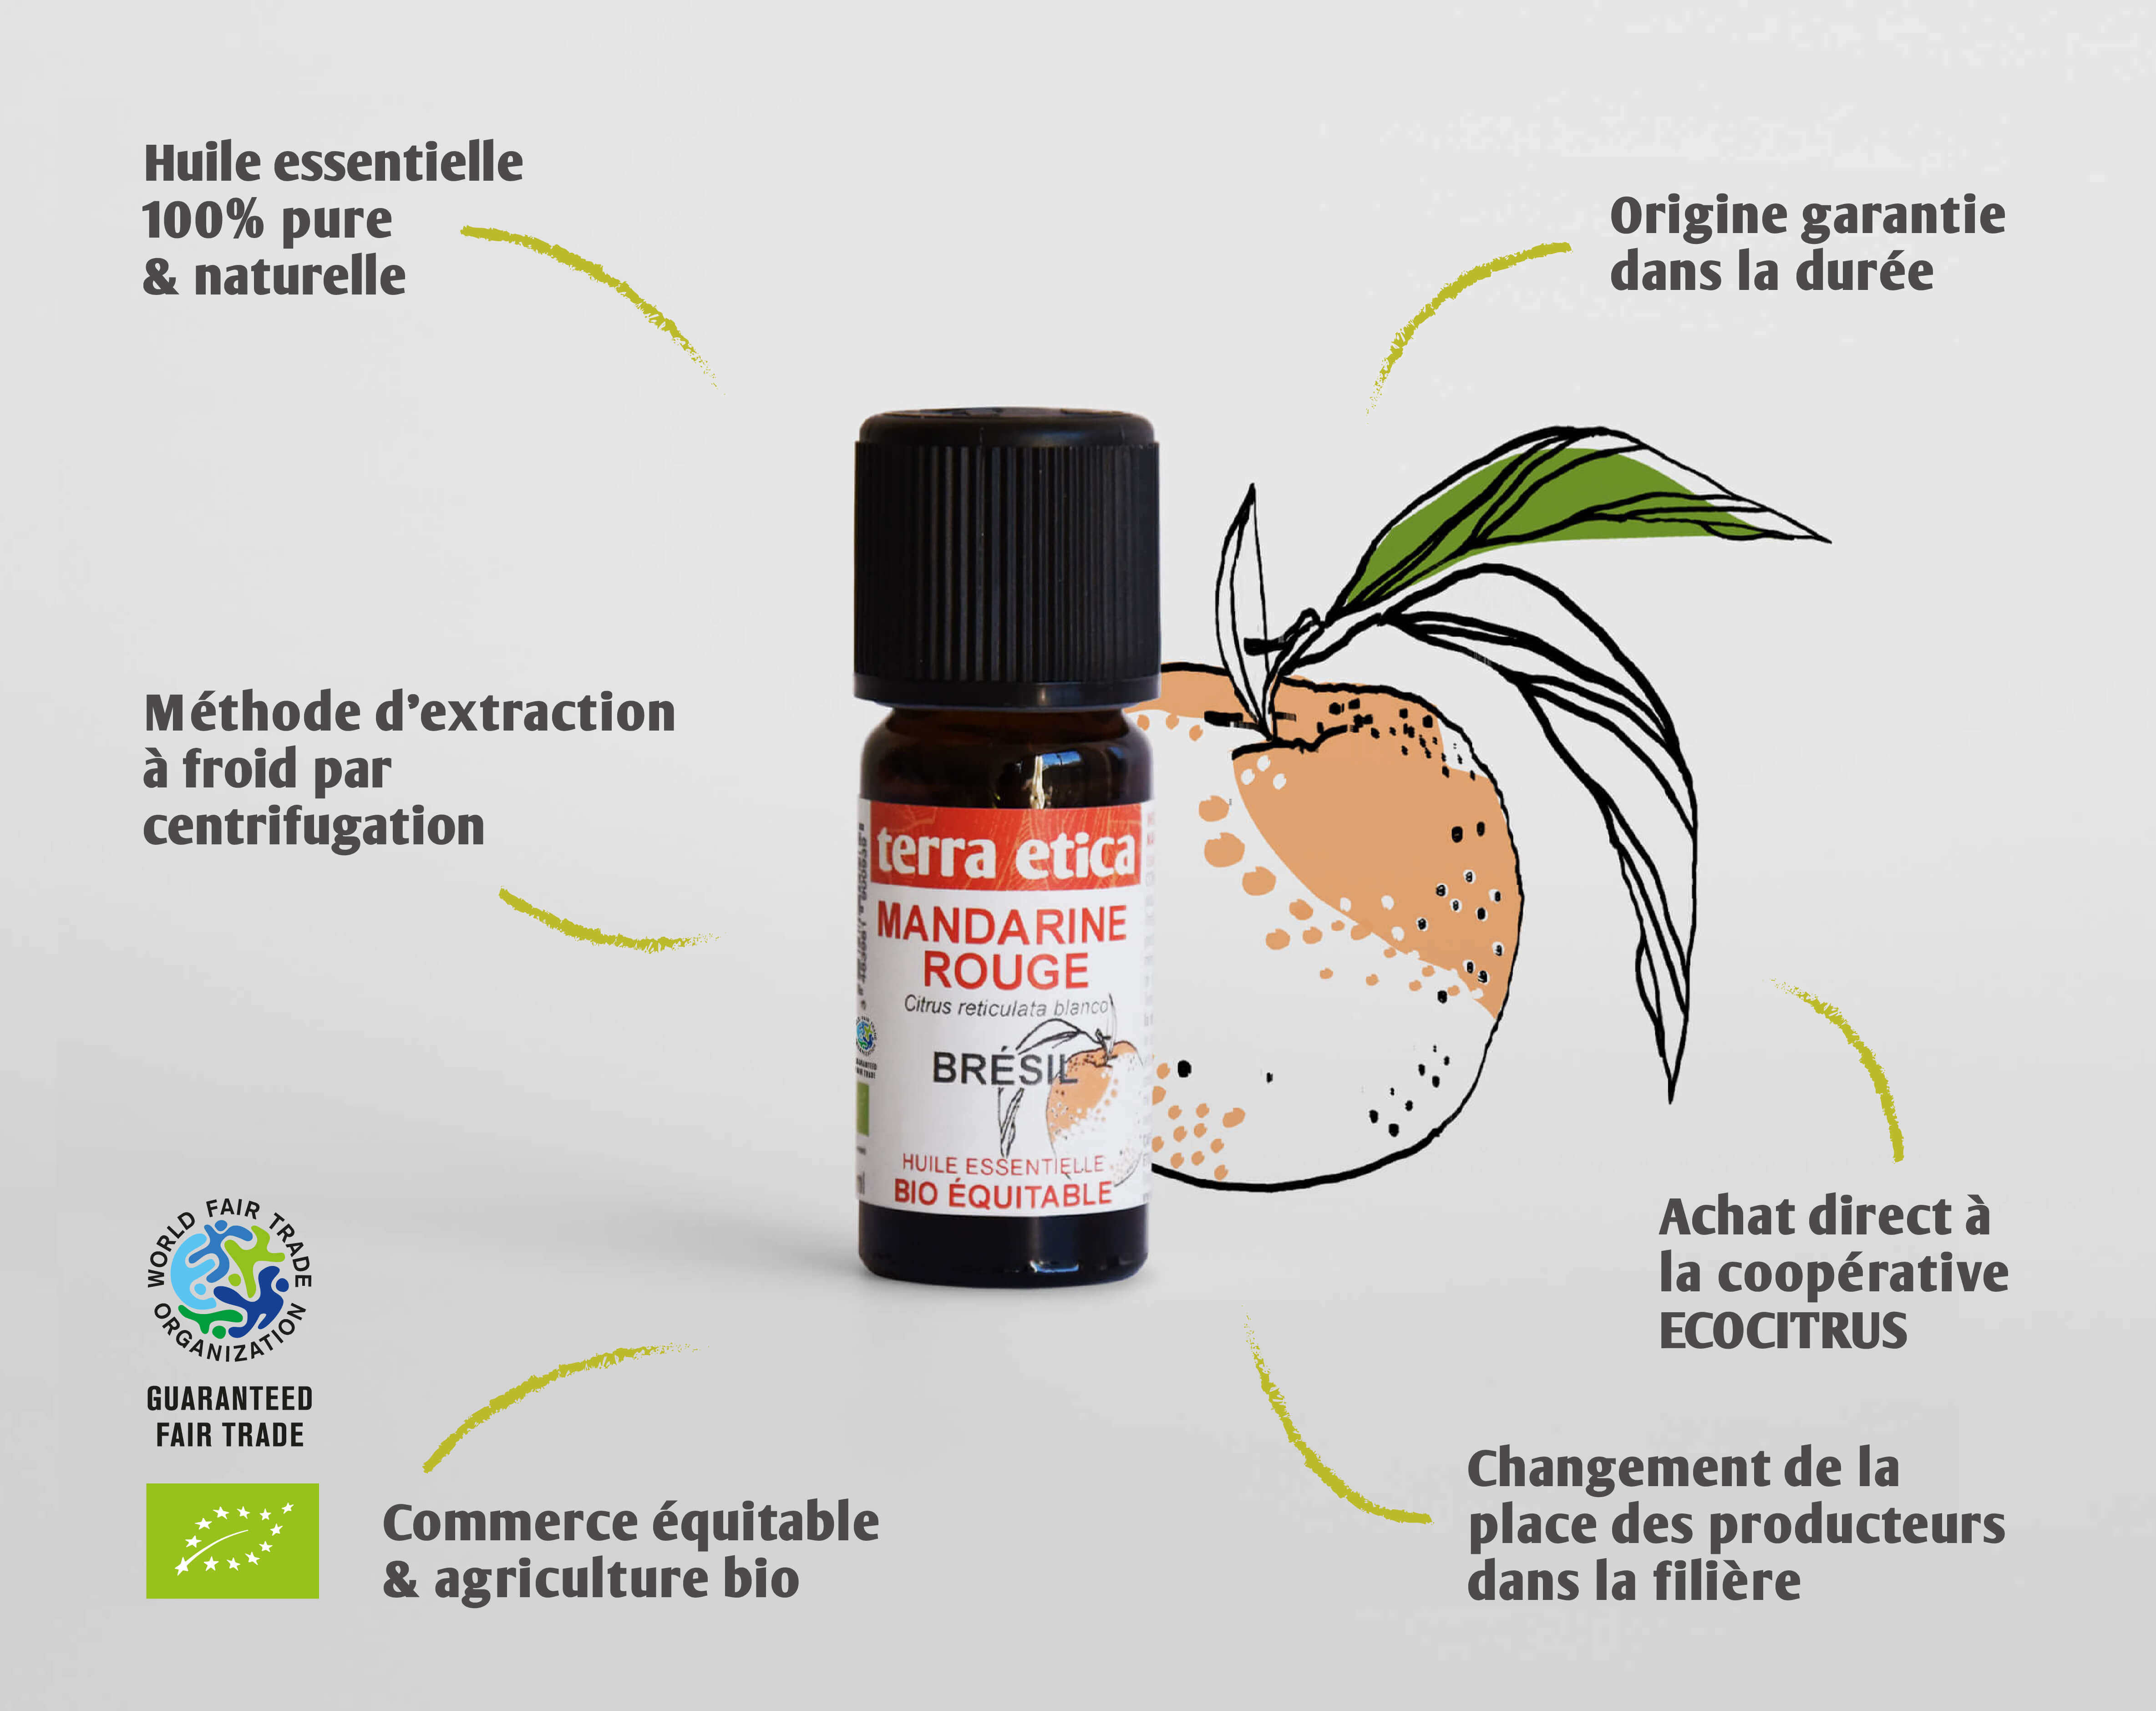 Terra Etica - Pure huile essentielle Mandarine rouge biologique et équitable